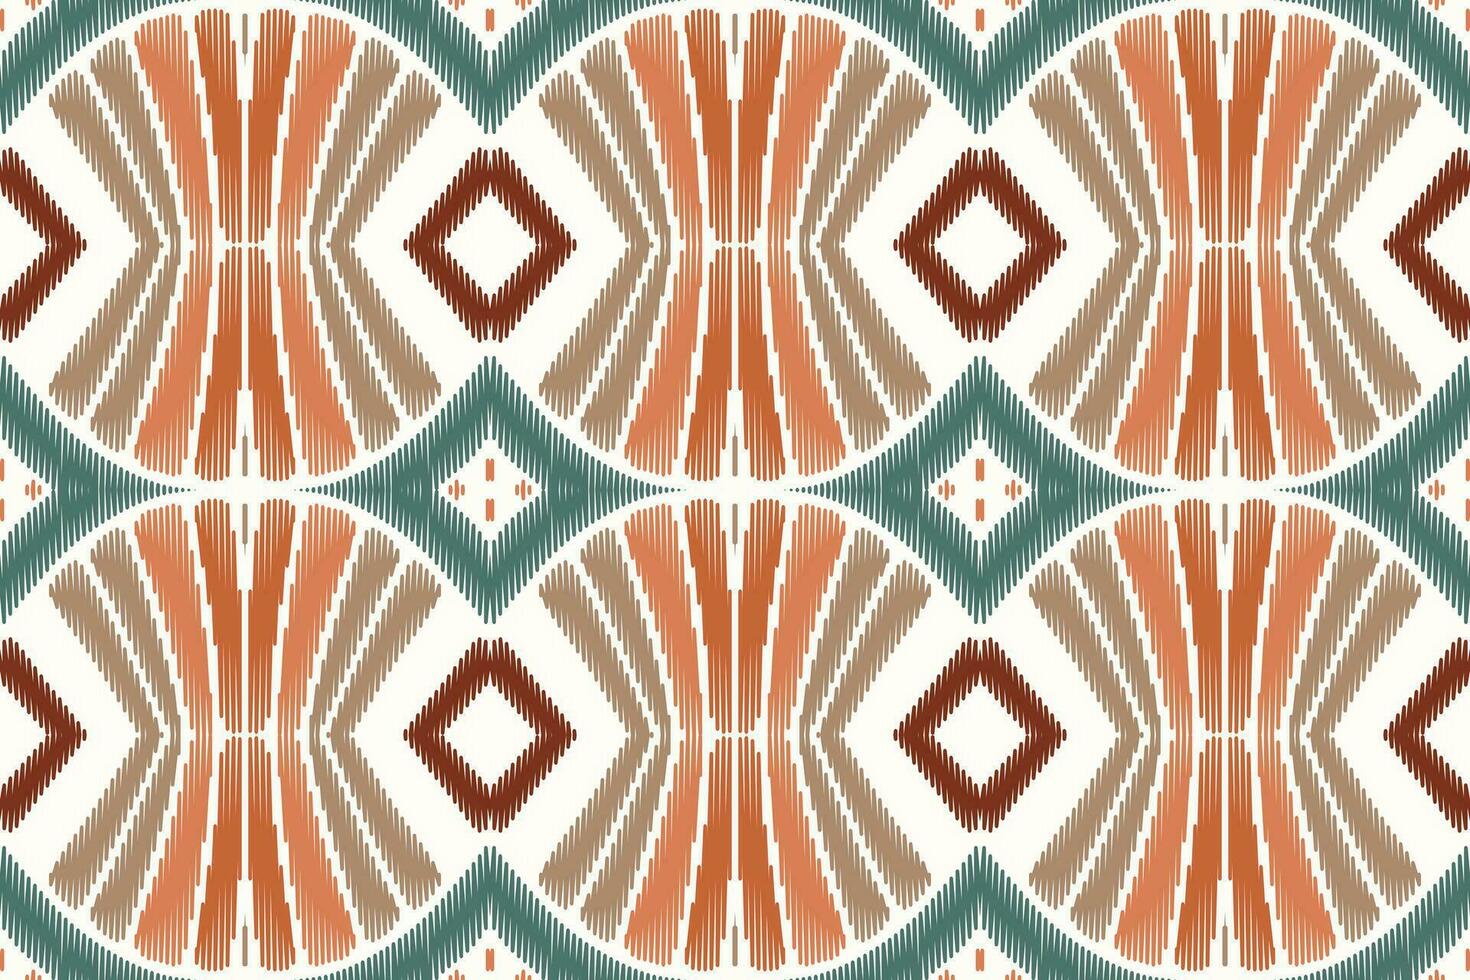 Afrikaanse ikat bloemen paisley borduurwerk Aan wit achtergrond.geometrisch etnisch oosters patroon traditioneel.azteken stijl abstract vector illustratie.ontwerp voor textuur, stof, kleding, verpakking, tapijt.